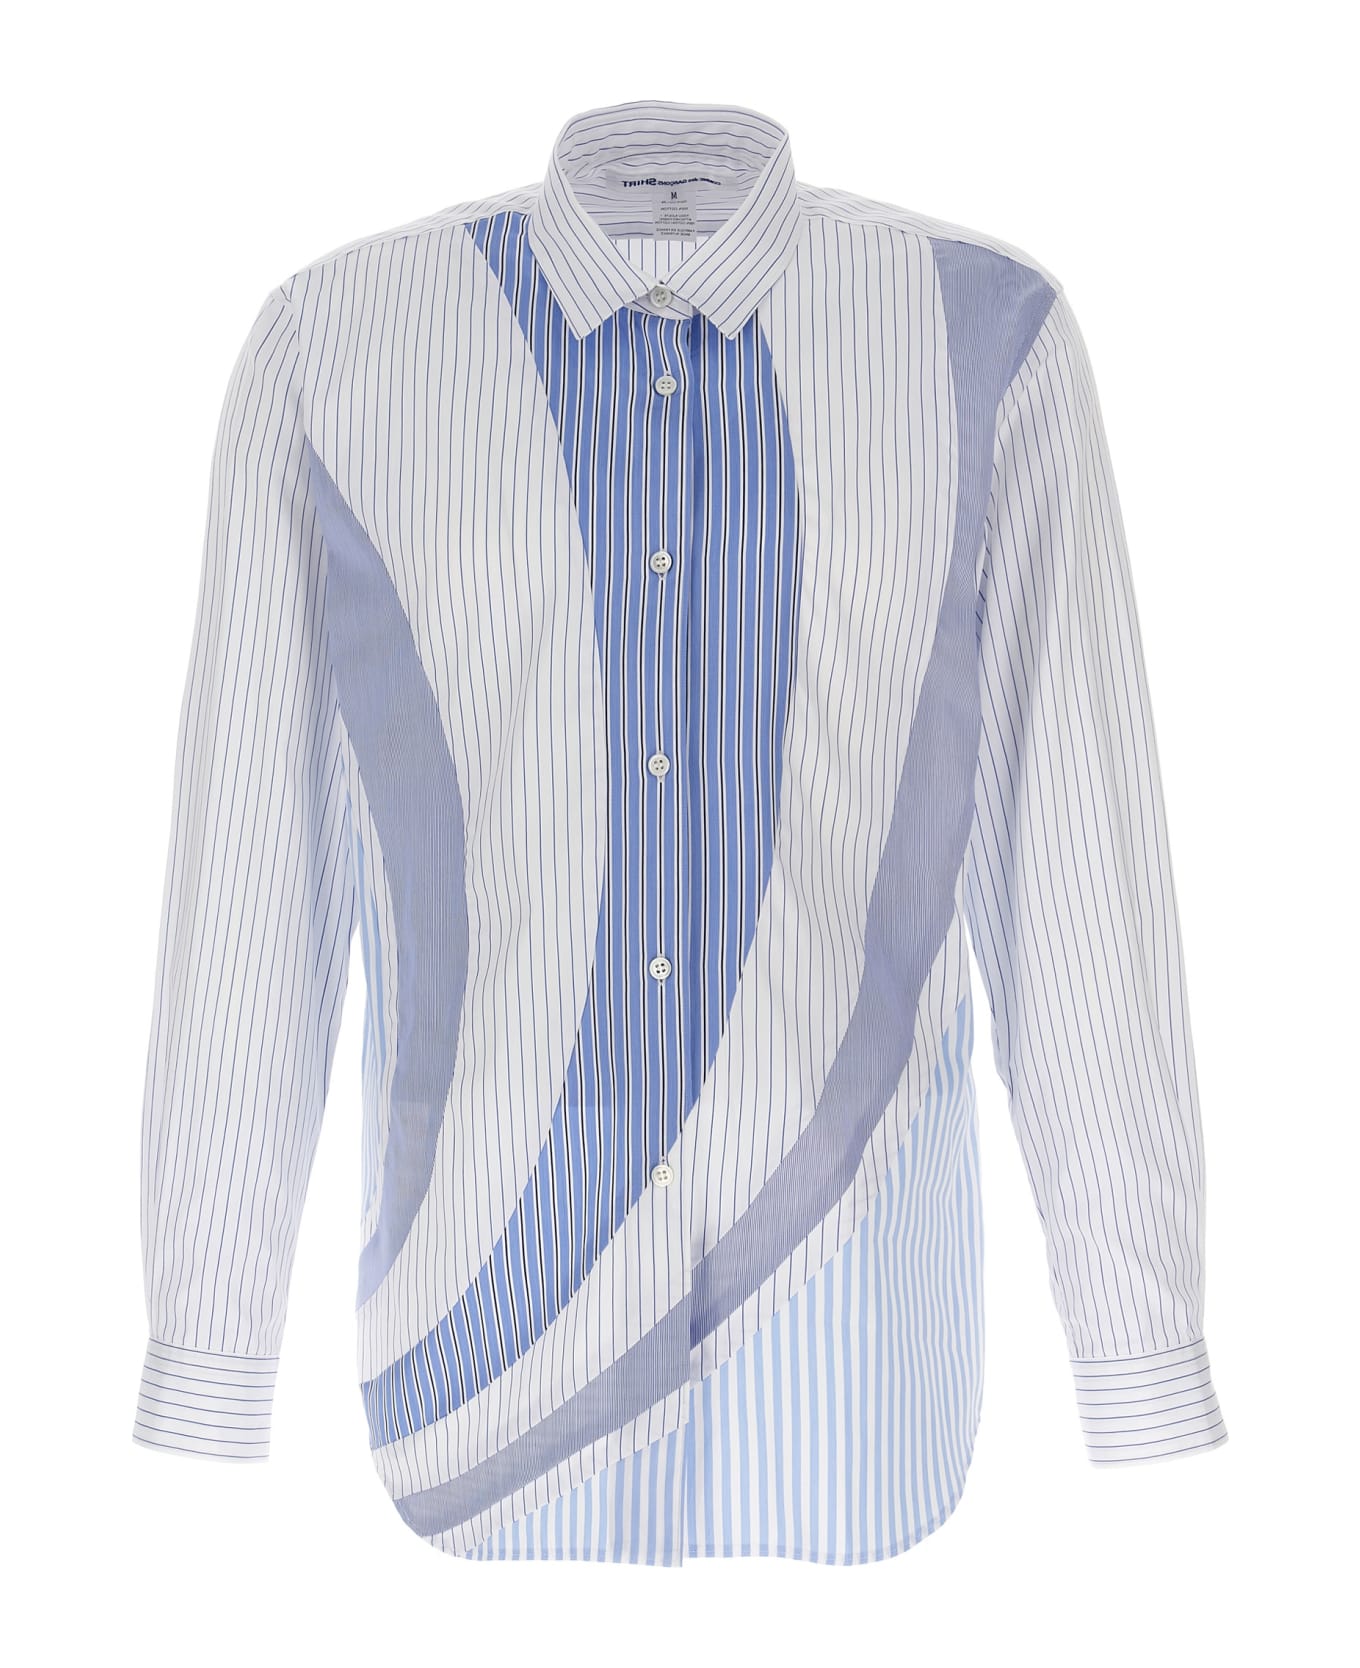 Comme des Garçons Shirt Striped Shirt - Light Blue